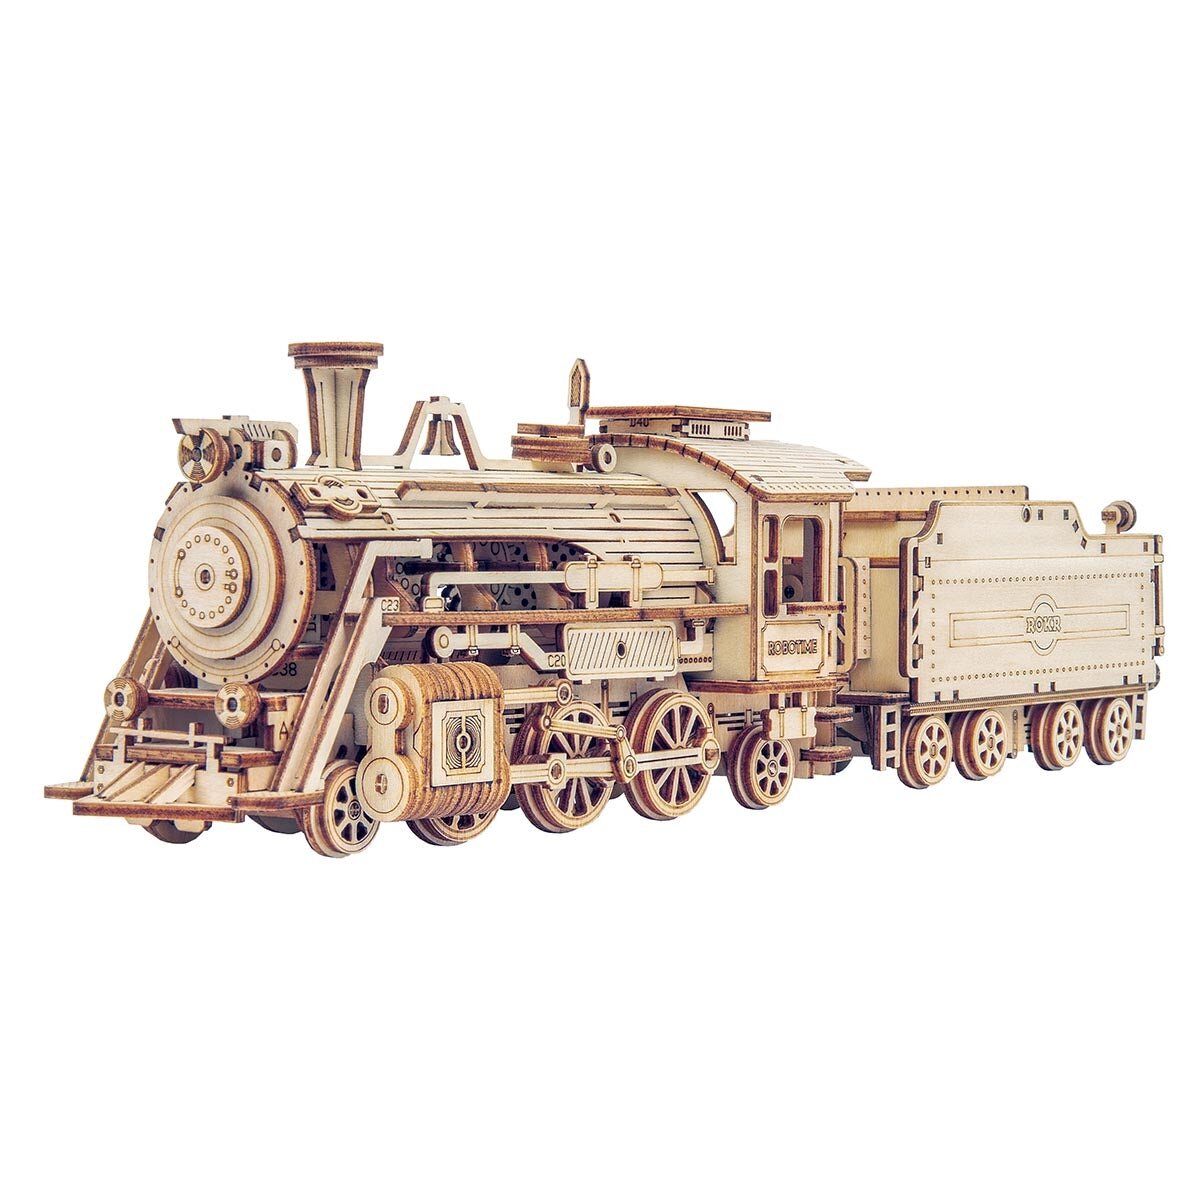 Wooden 3D puzzle - Prime steam express train ROKR MC501